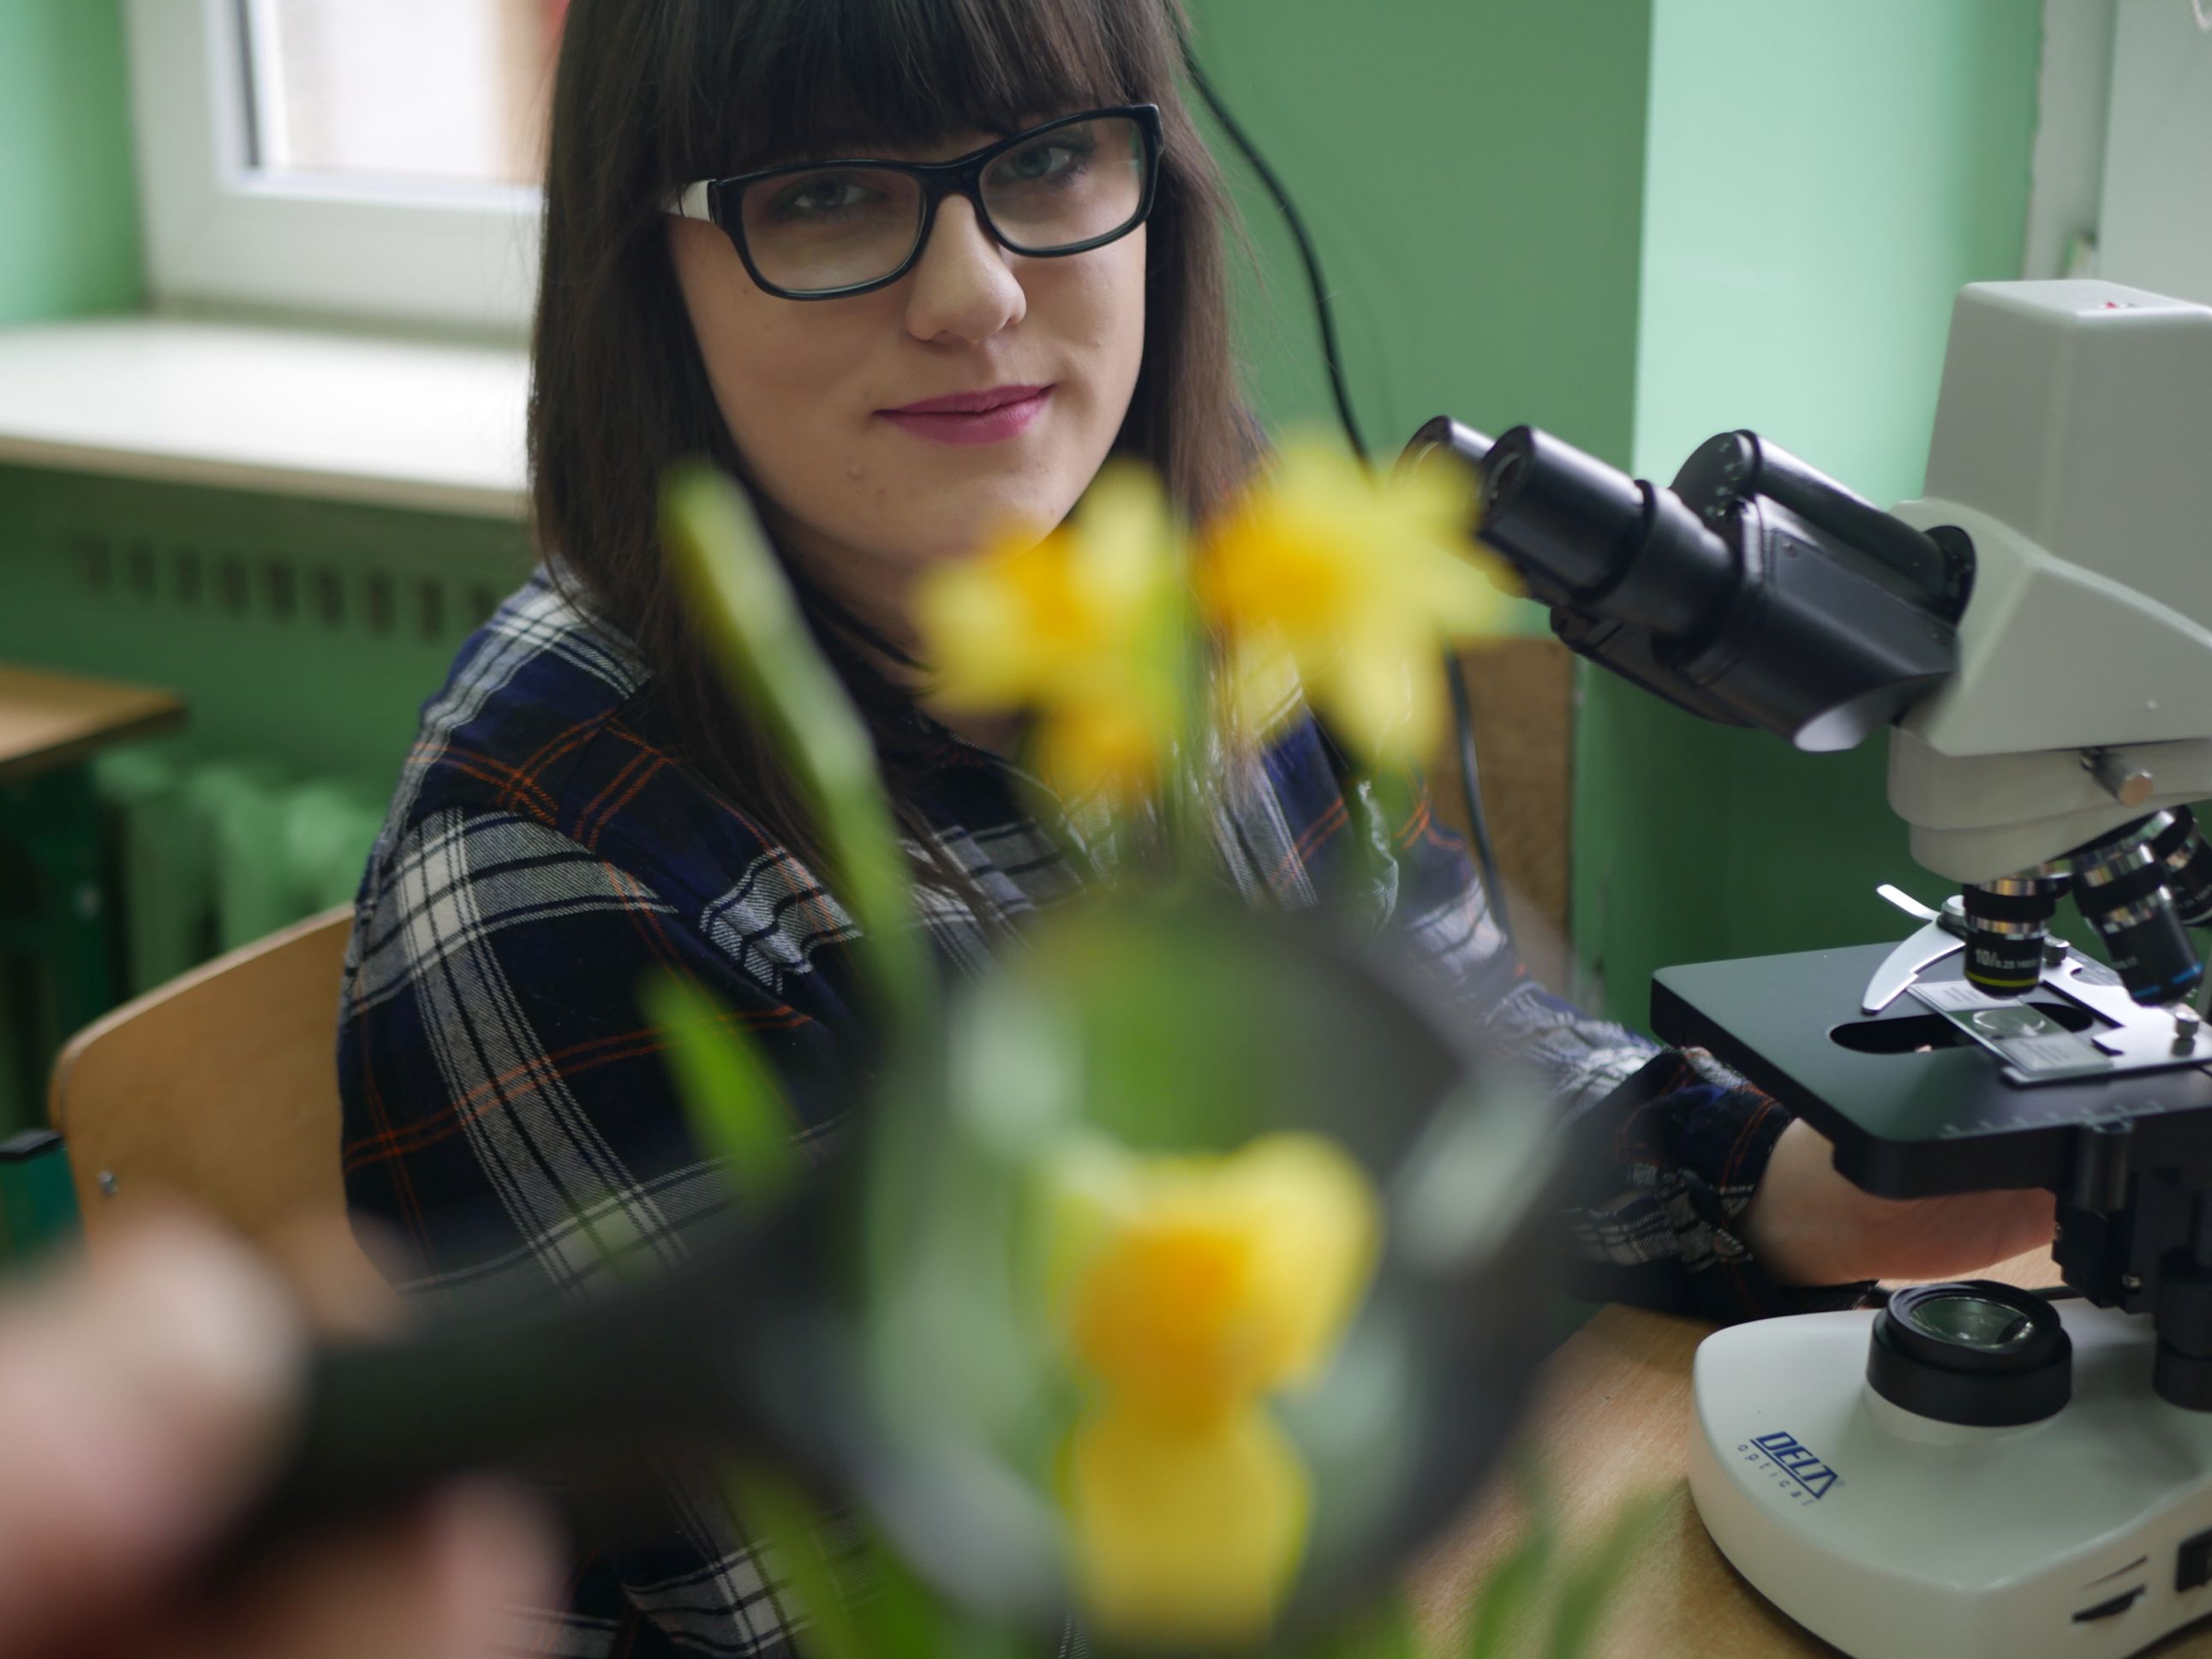 Zajęcia rozwijające zainteresowania z biologii, dziewczyna przy mikroskopie.